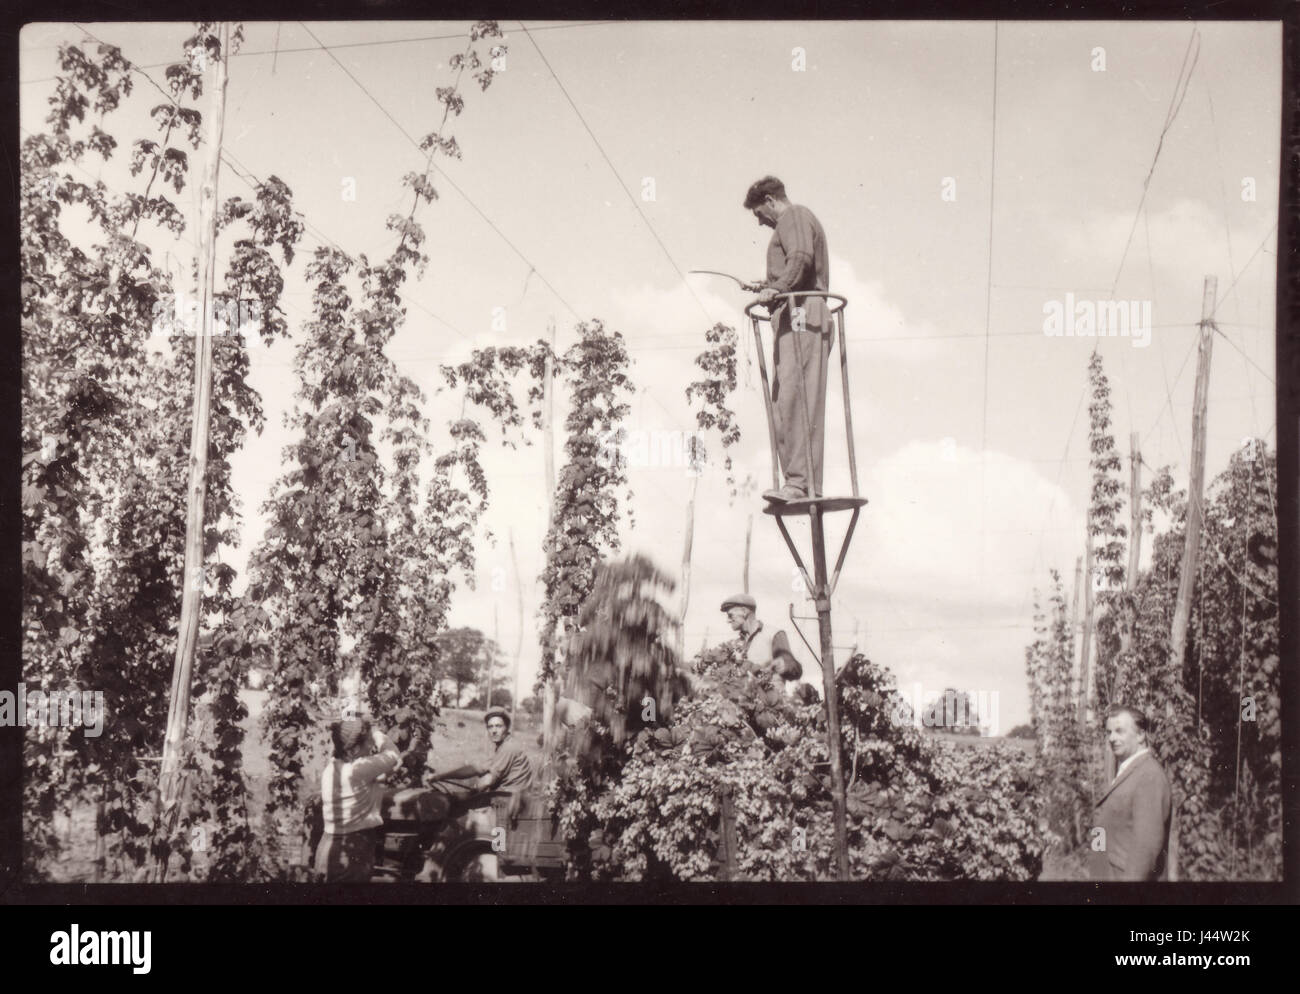 Kentish Hop Pickers mit einem Mann bekannt als Pole - Abzieher thront auf einem stelzenläufer, mit einem entenschnabel der hop Denergieanlagen (Rebe) ca. unten zu schneiden. 1950, Kent, Großbritannien Stockfoto